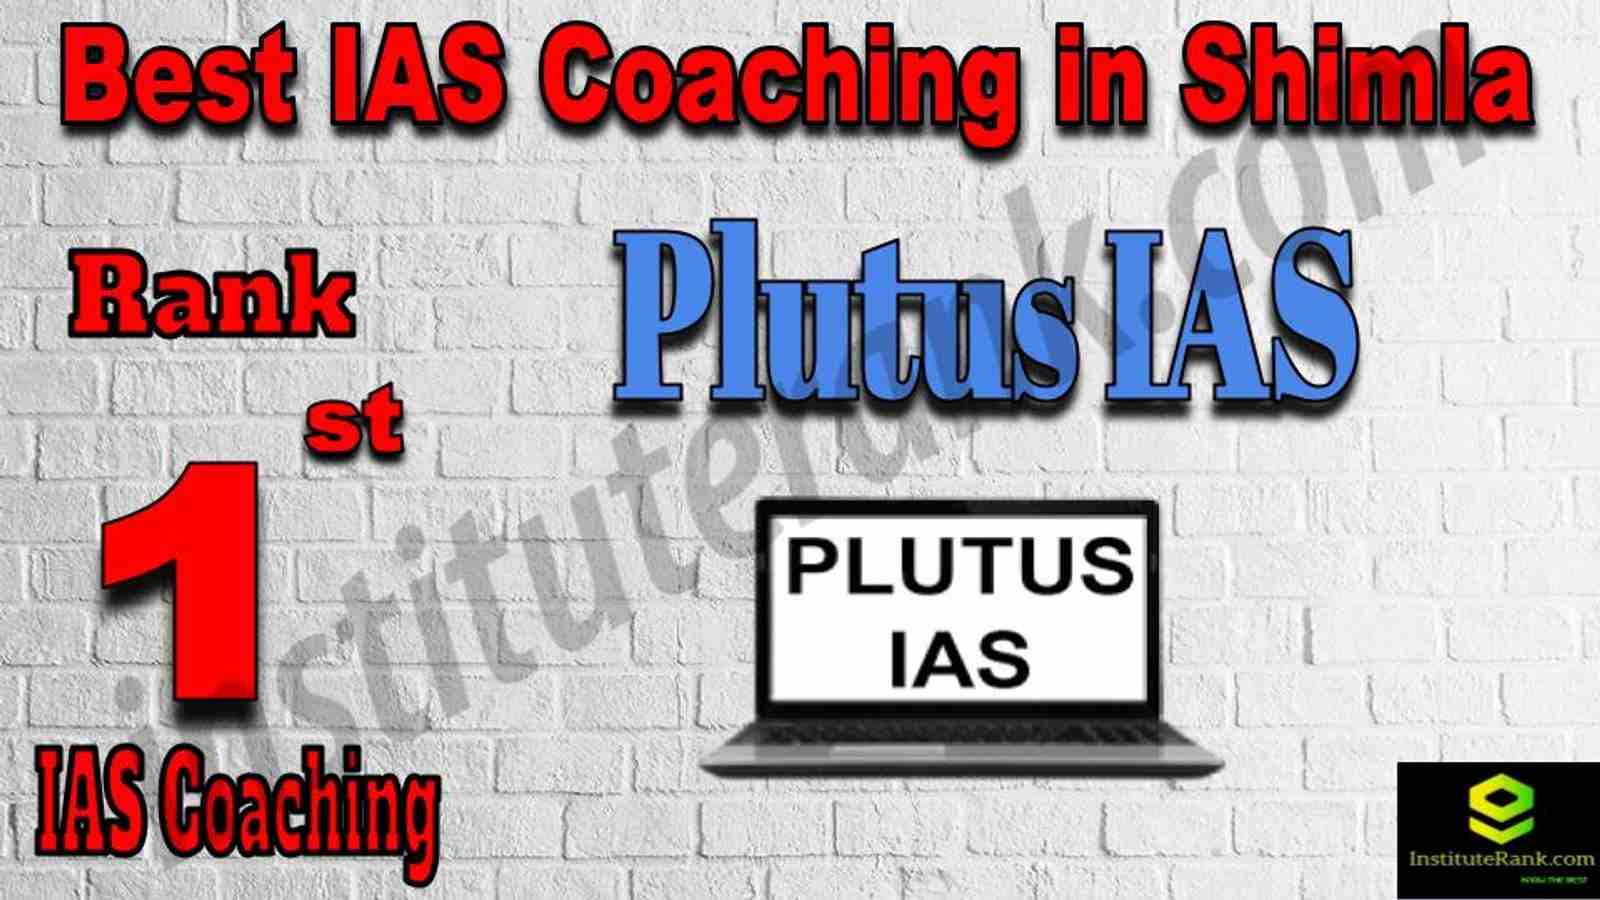 1st Best IAS Coaching in Shimla